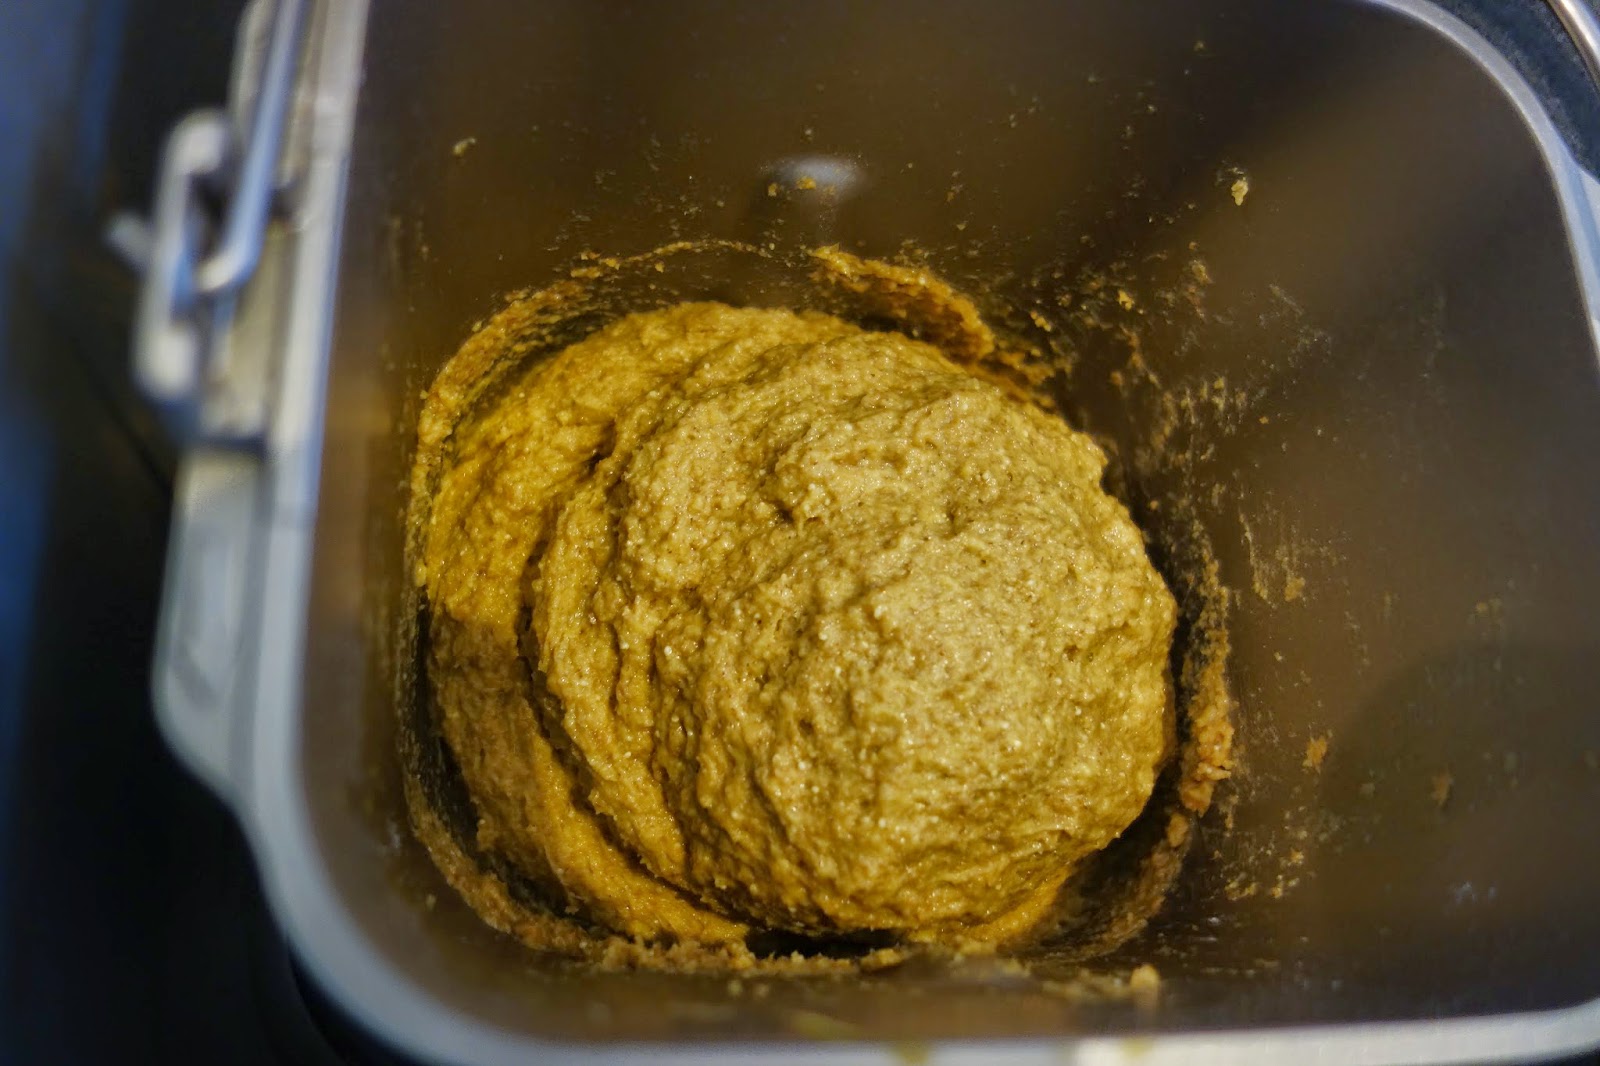 家庭用パン焼き器　HB　で作った低糖質パン　糖質制限ダイエットにどうぞ　　ホームベーカリー（パナソニックSD-BH105　HB）で焼きました　低糖質　糖質制限　ダイエット　メニュー　作り方　レシピ　　パン焼き機　全粒粉　低糖類　ラカント　パルスウィート　バイタミックス　ミキサー　乾燥大豆　大豆粉　卵　たまご　　砂糖を使わない　簡単　グルテン　少な目 ふすま　衾　ブラン　ラカンカット　バター